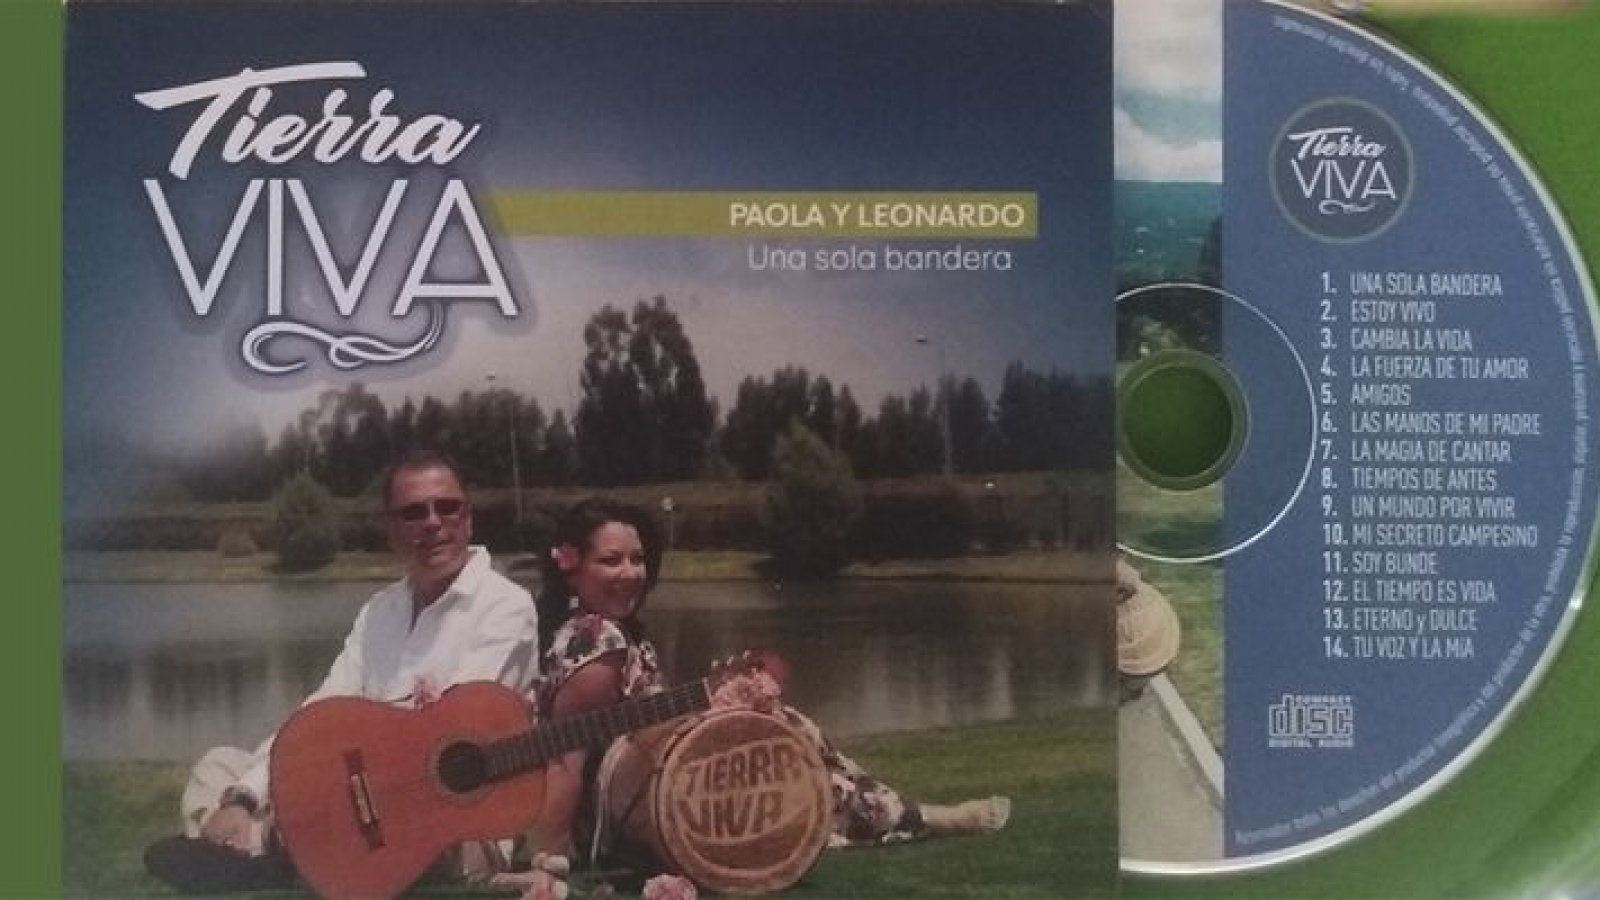 dueto tierra viva - portada cd